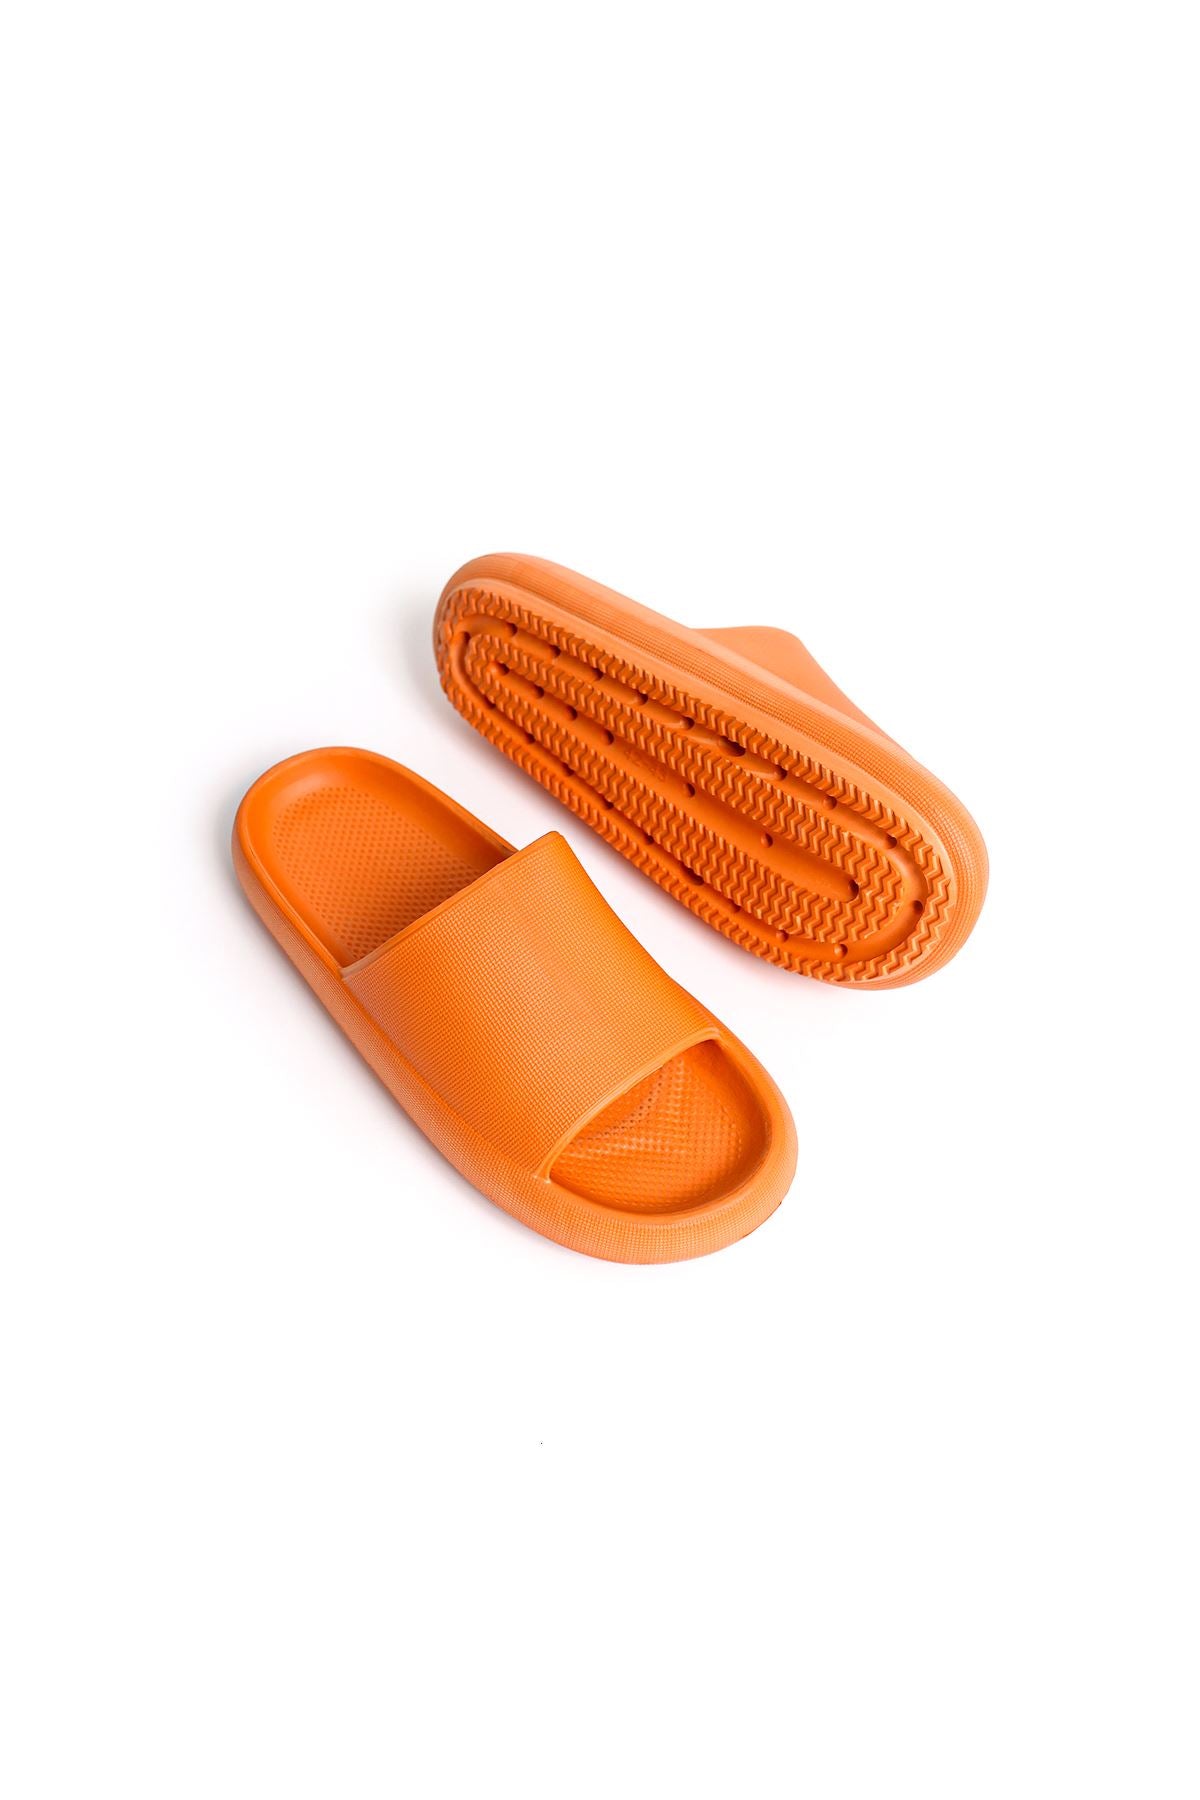 STM Design Polyurethane Men's Slippers ORANGE - STREETMODE ™